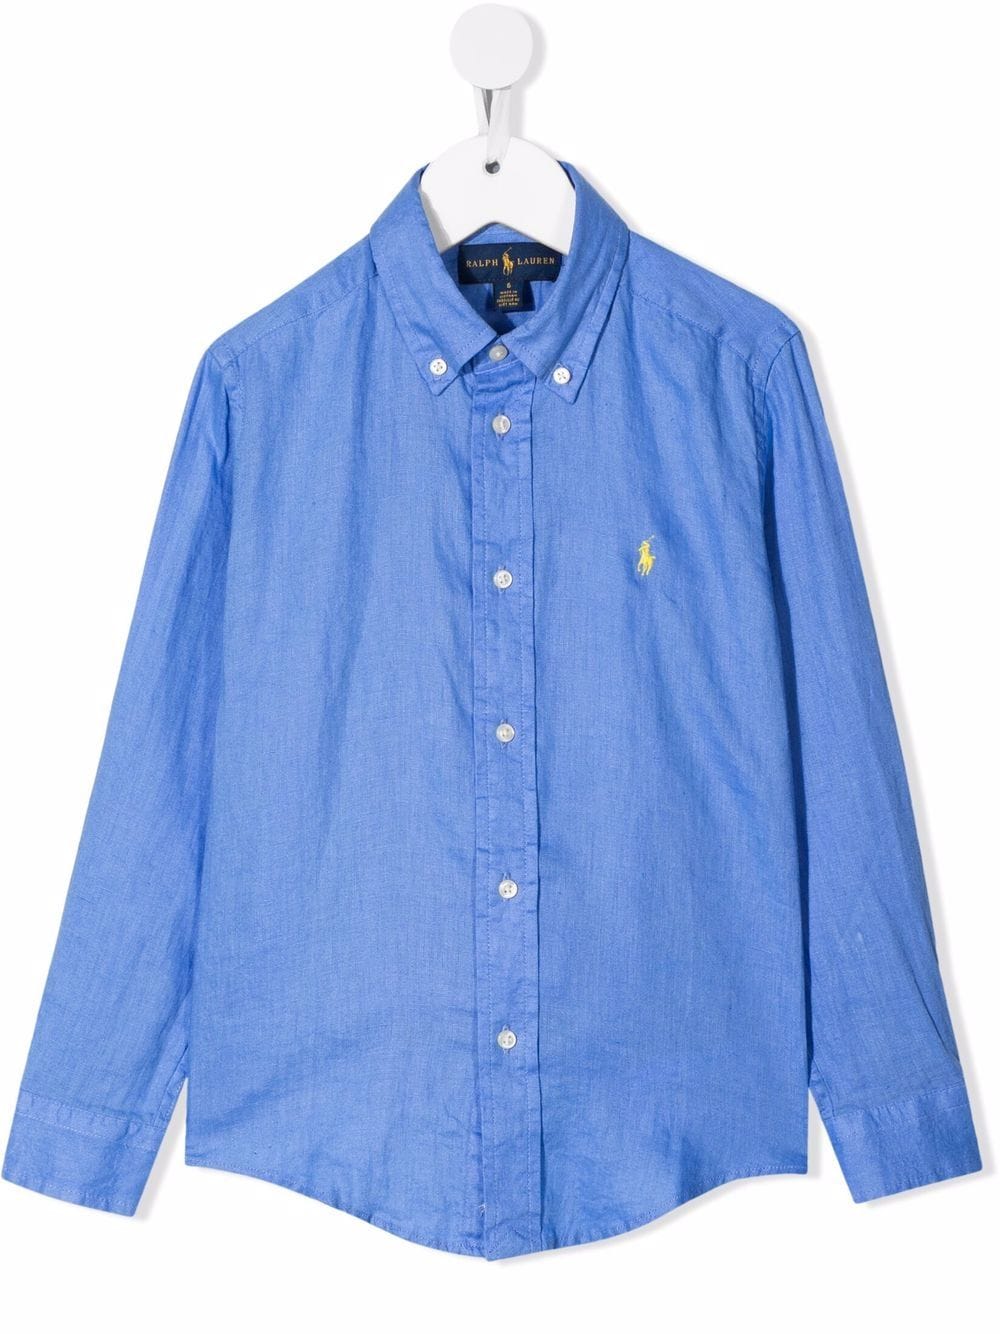 Camicia blu chiaro per bambino in lino